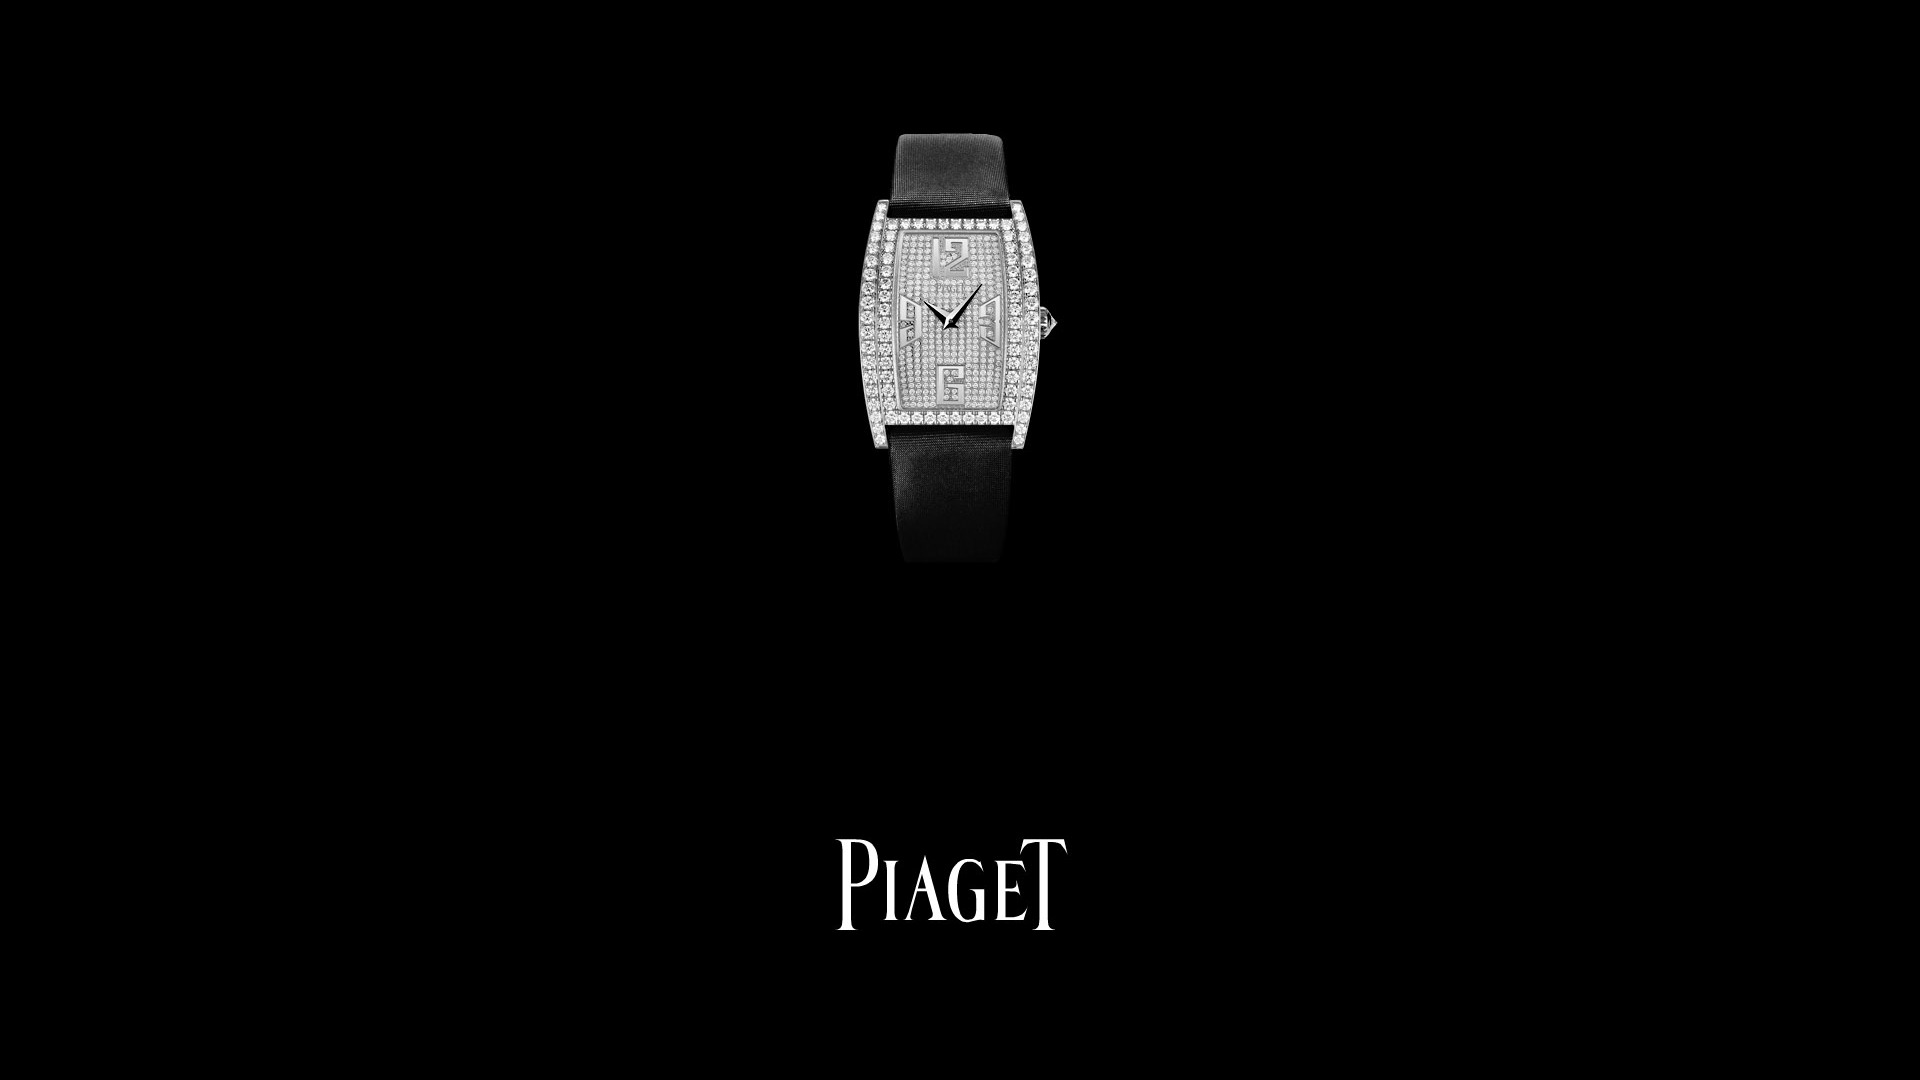 Piaget Diamante fondos de escritorio de reloj (2) #5 - 1920x1080